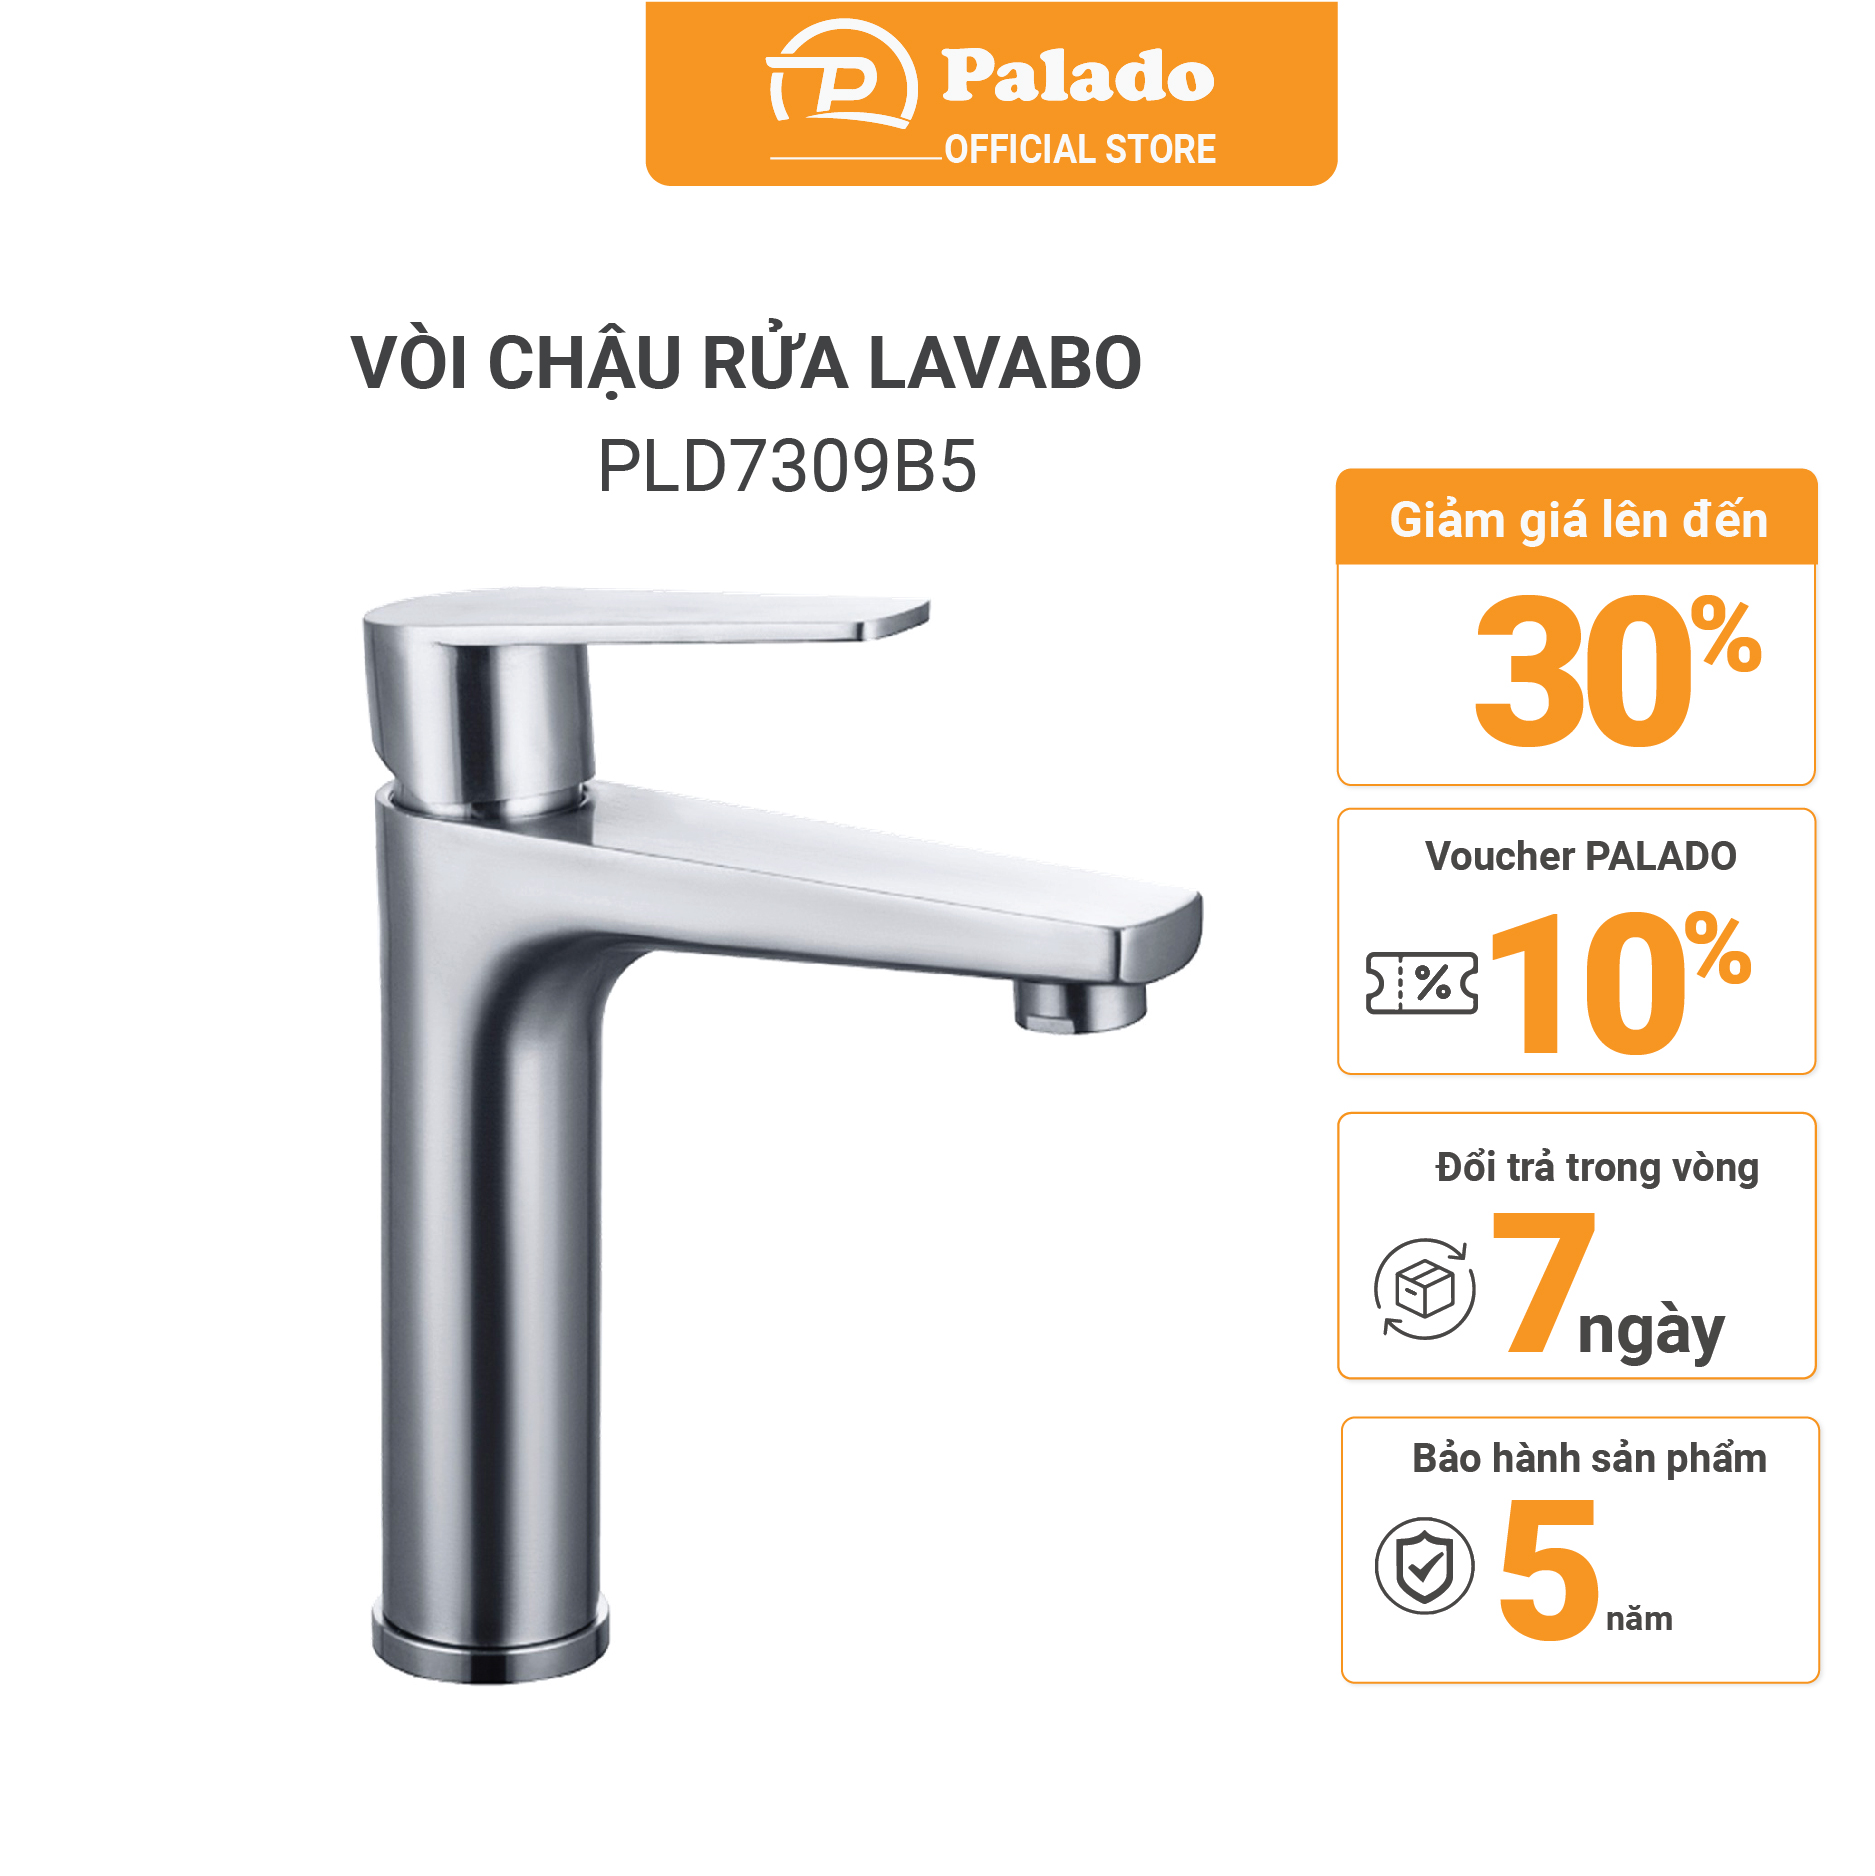 PALADO là thương hiệu vòi chậu rửa bát được đánh giá cao về chất lượng 